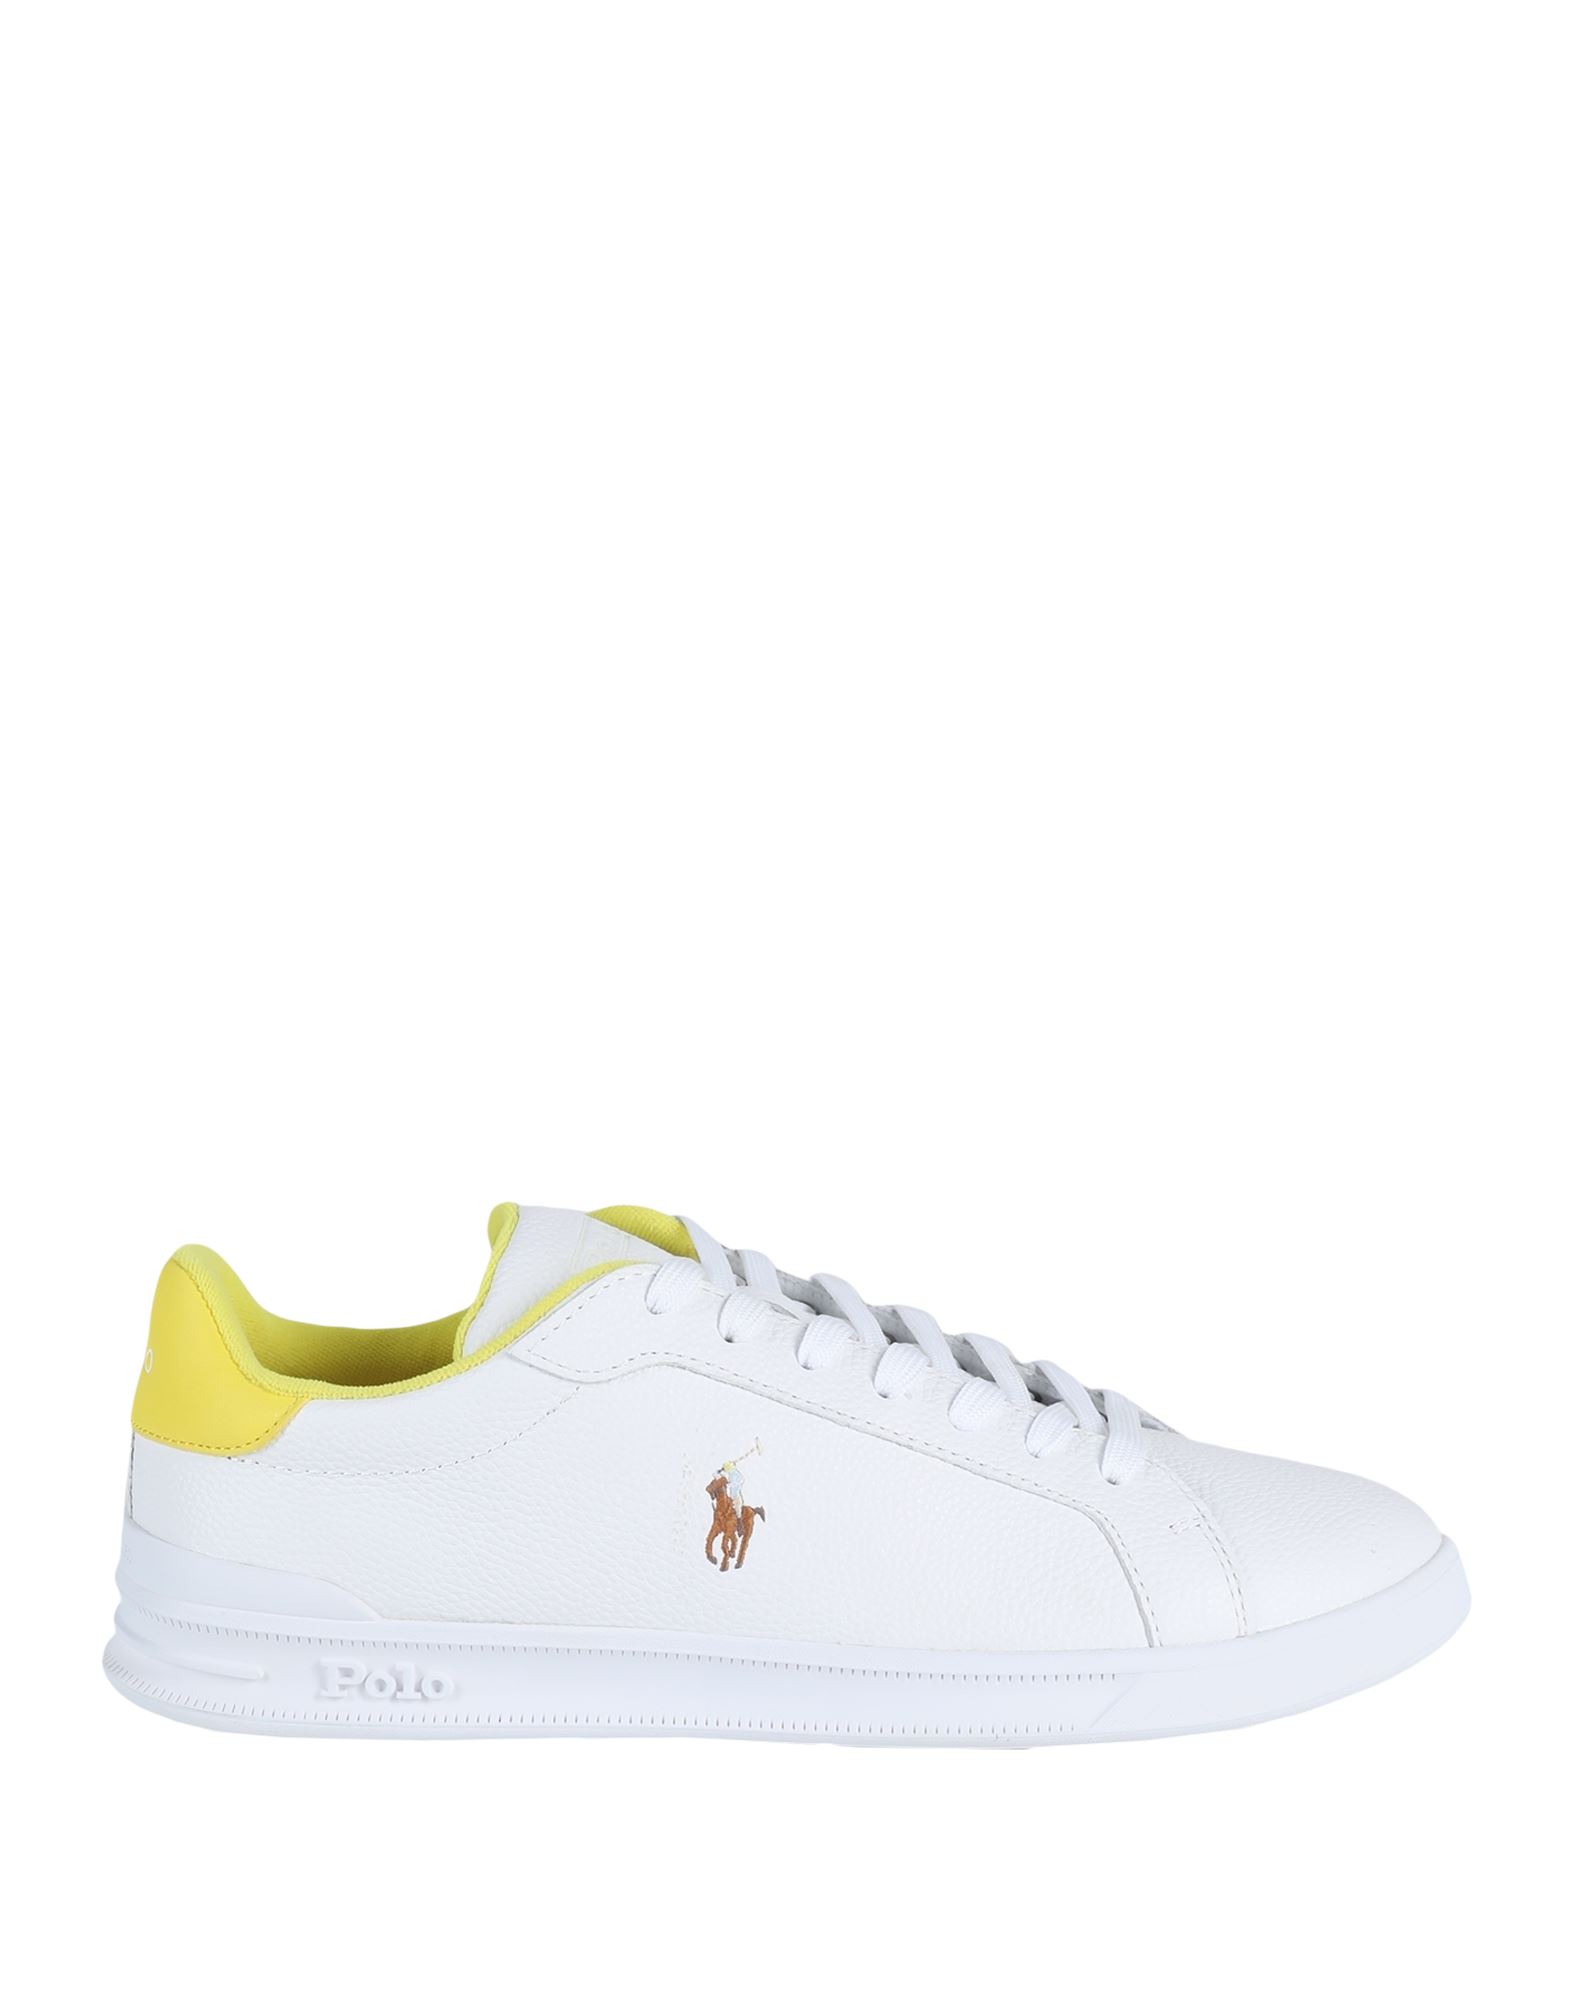 Polo Ralph Lauren Sneakers In Yellow